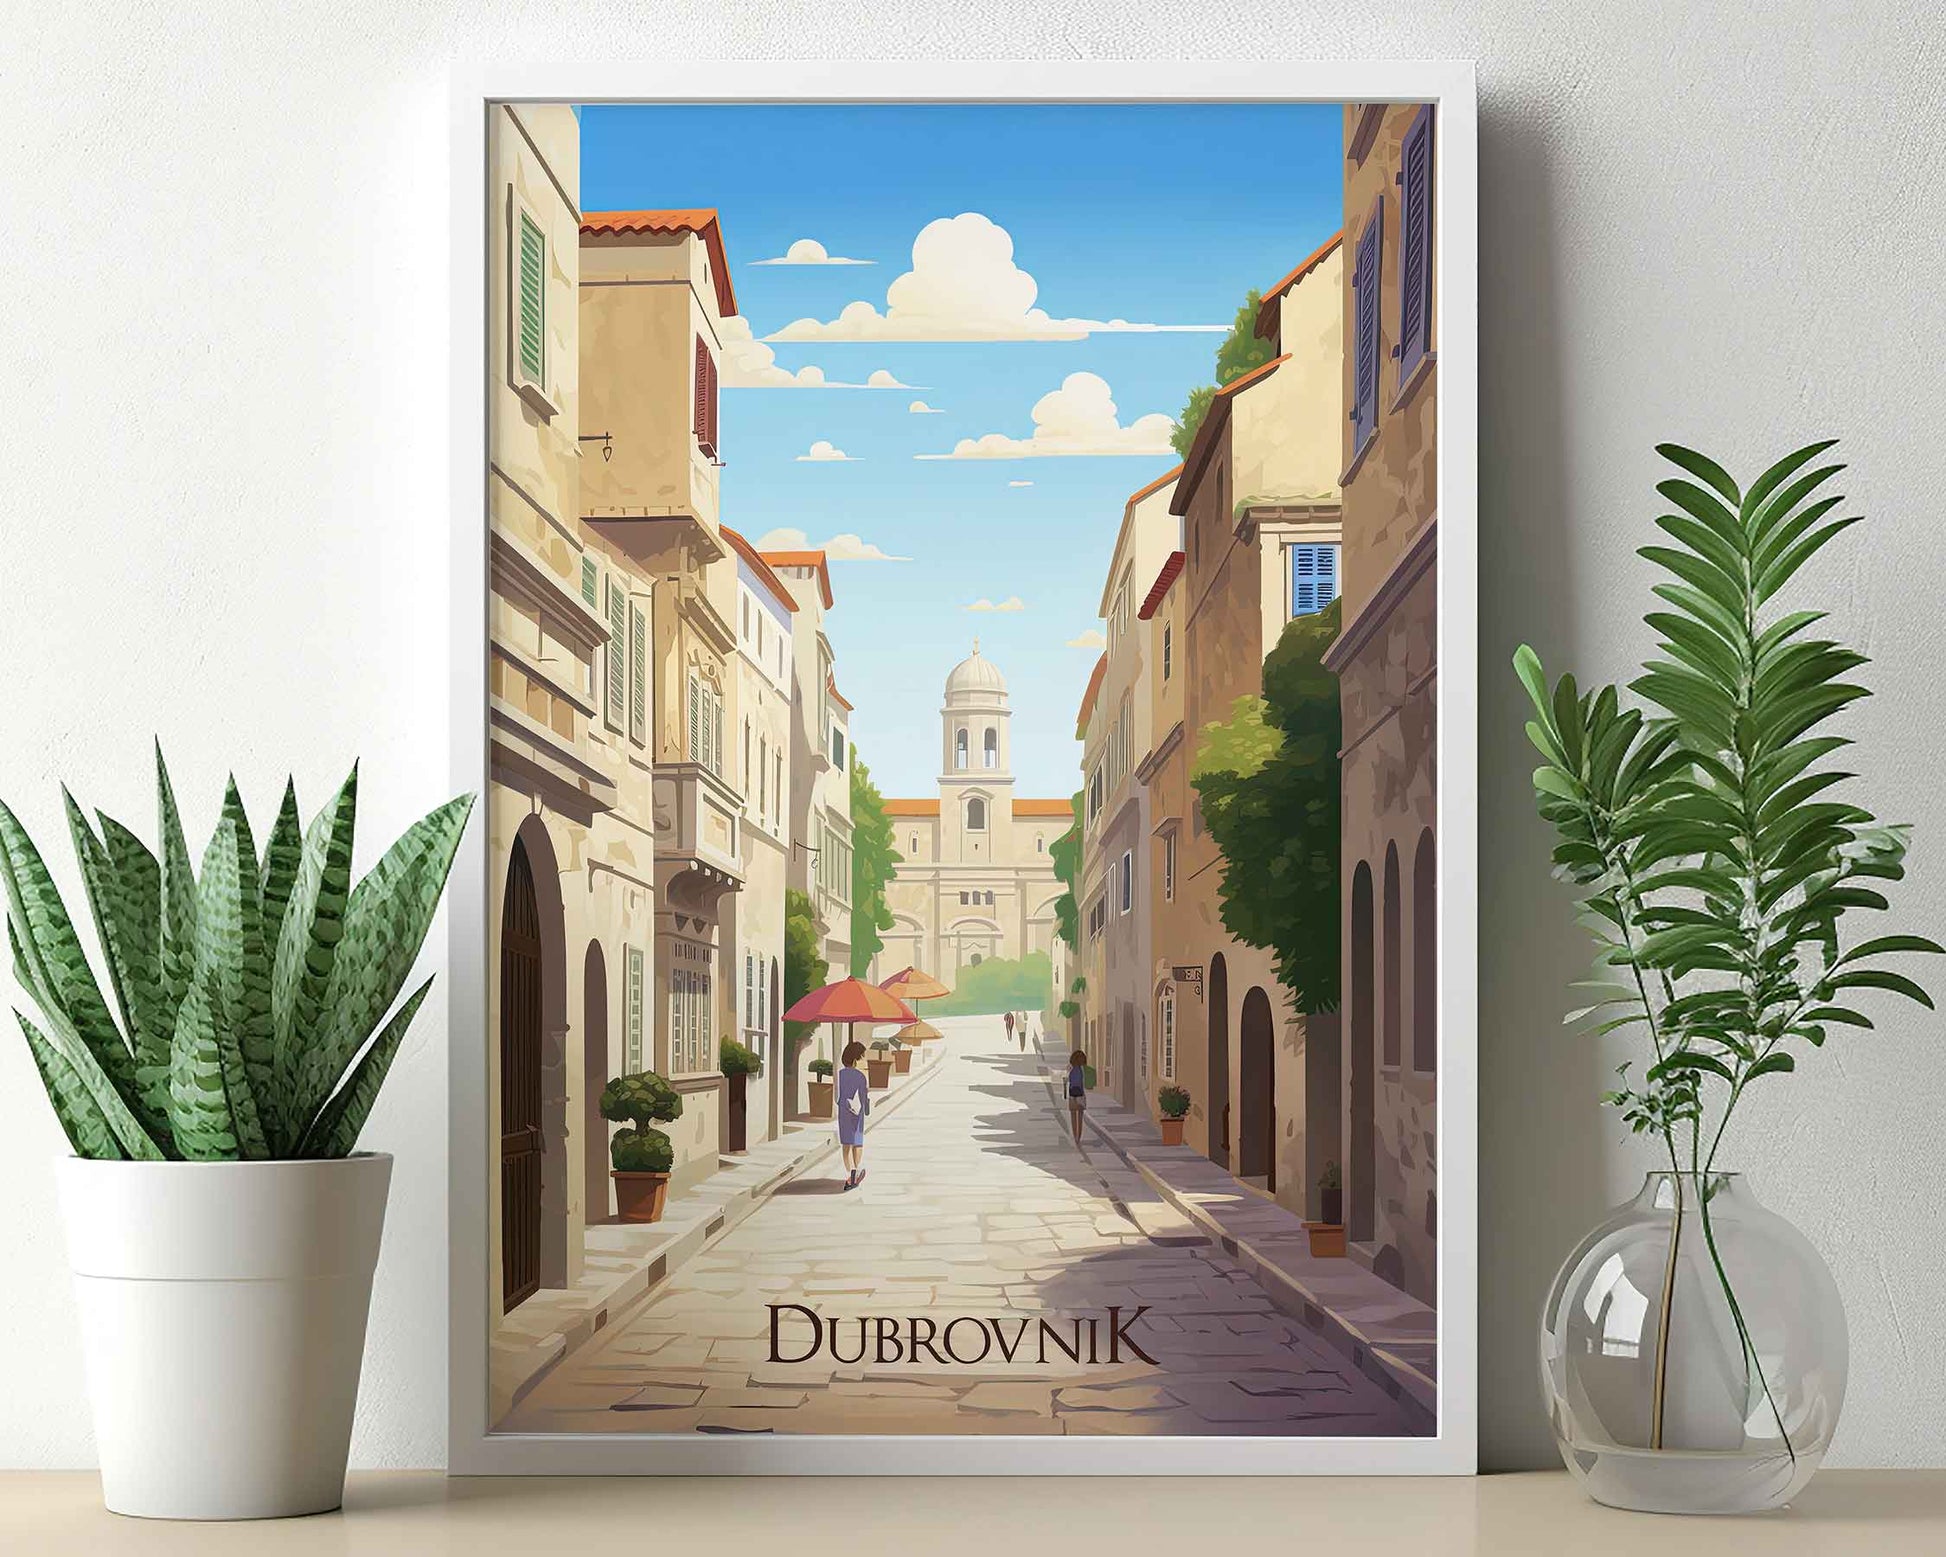 Framed Image of Dubrovnik Croatia Wall Art Travel Poster Prints Illustration